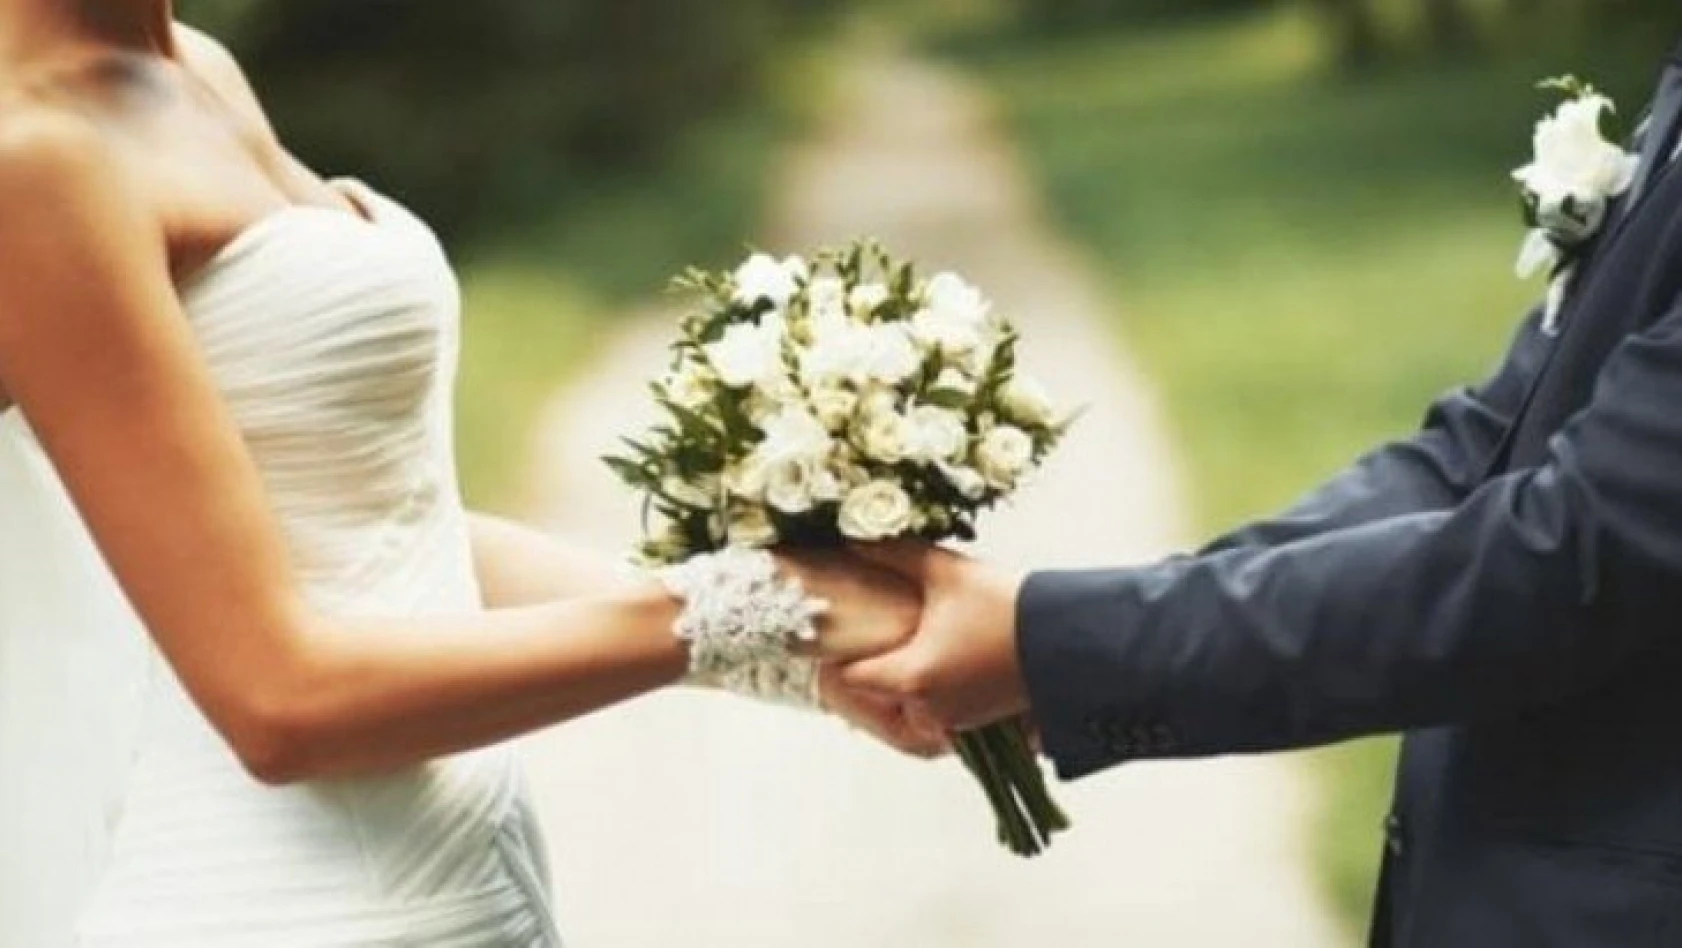 Nikah törenleri ve düğünlerde uygulanacak kurallar belli oldu